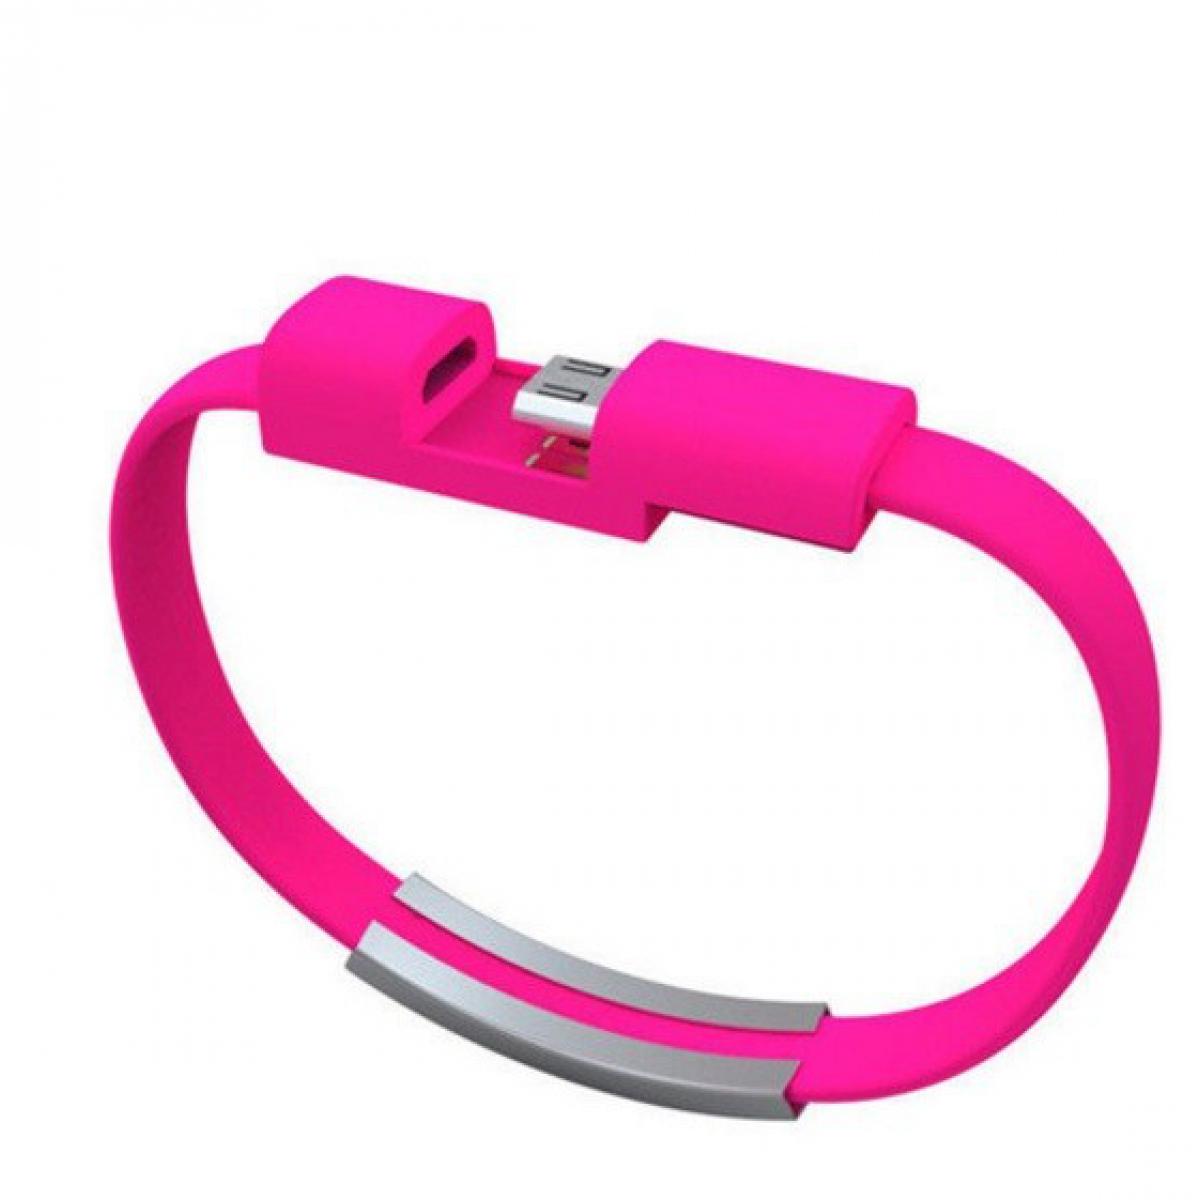 Shot - Cable Bracelet Micro USB pour GIONEE F9 PLUS Android Chargeur USB 25cm (ROSE BONBON) - Autres accessoires smartphone